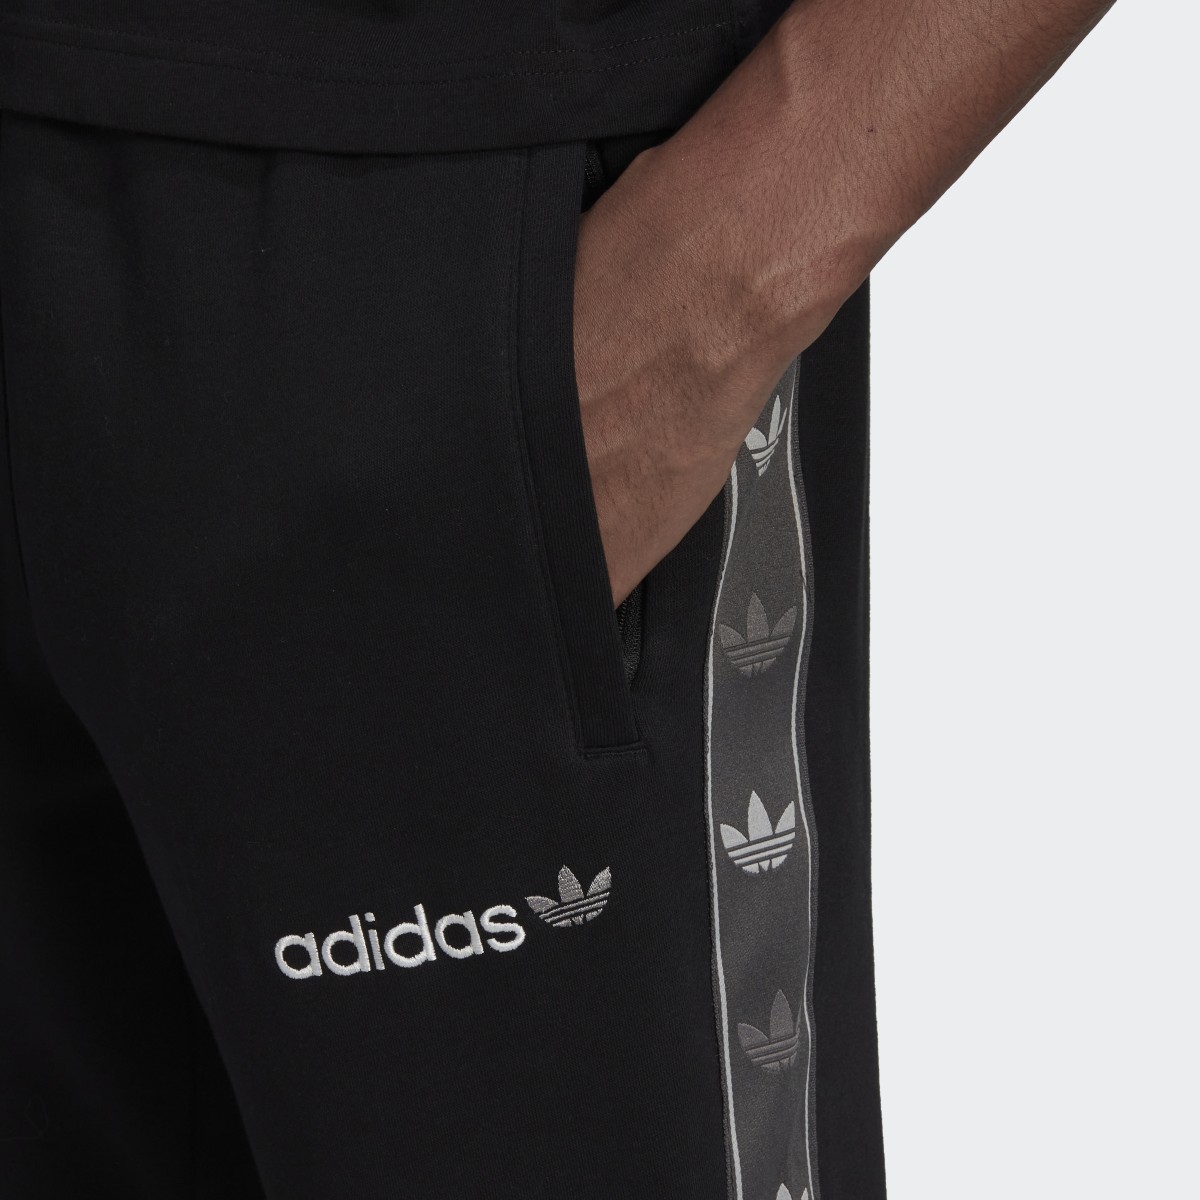 Adidas Tape Fleece Pants. 5